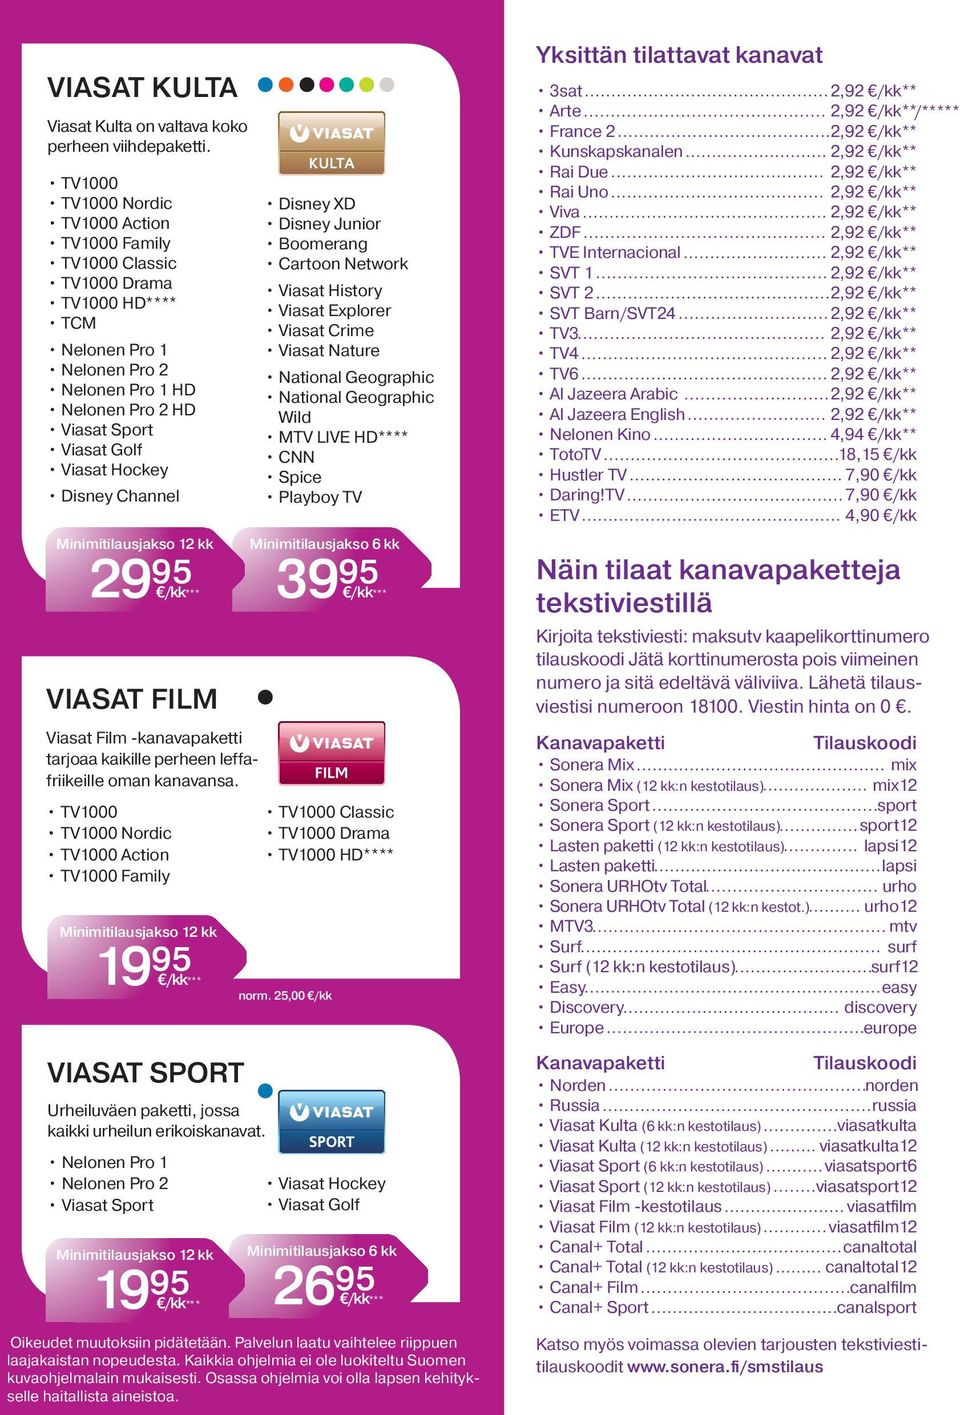 95 VIASAT FILM Viasat Film -kanavapaketti tarjoaa kaikille perheen leffafriikeille oman kanavansa.